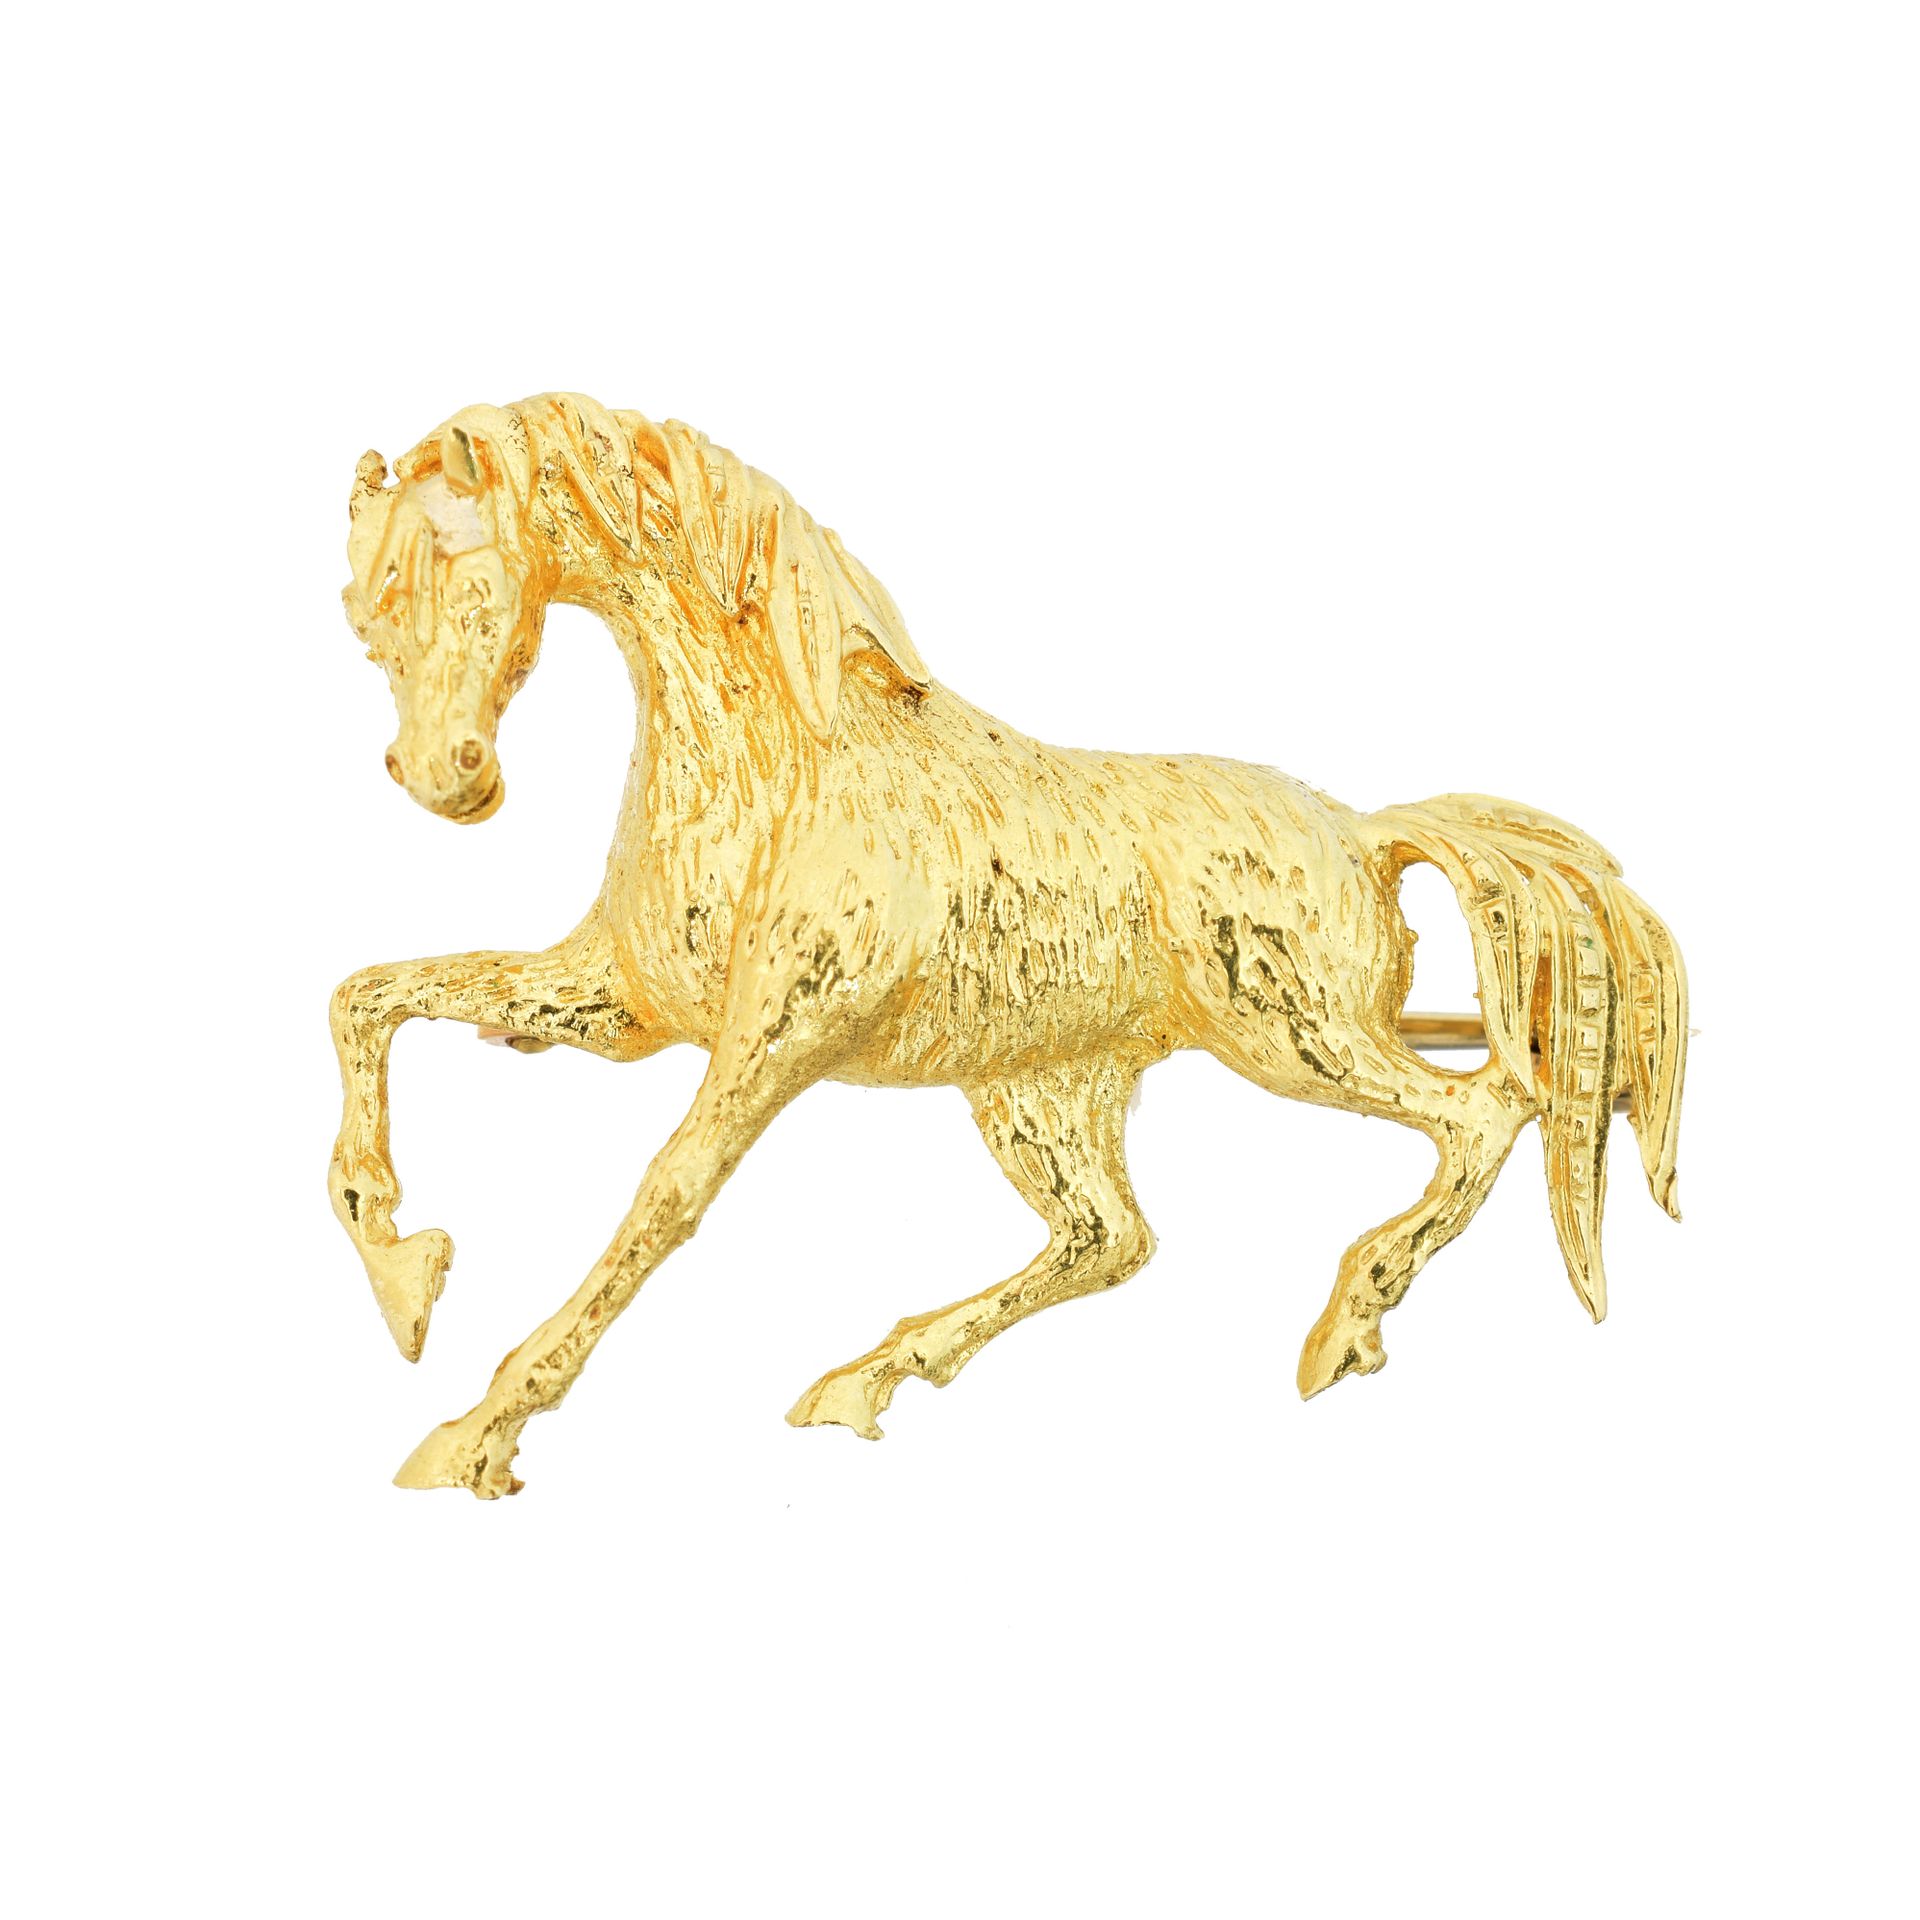 An 18ct gold brooch, 
Una spilla in oro 18ct, disegnata come un cavallo con capp&hellip;